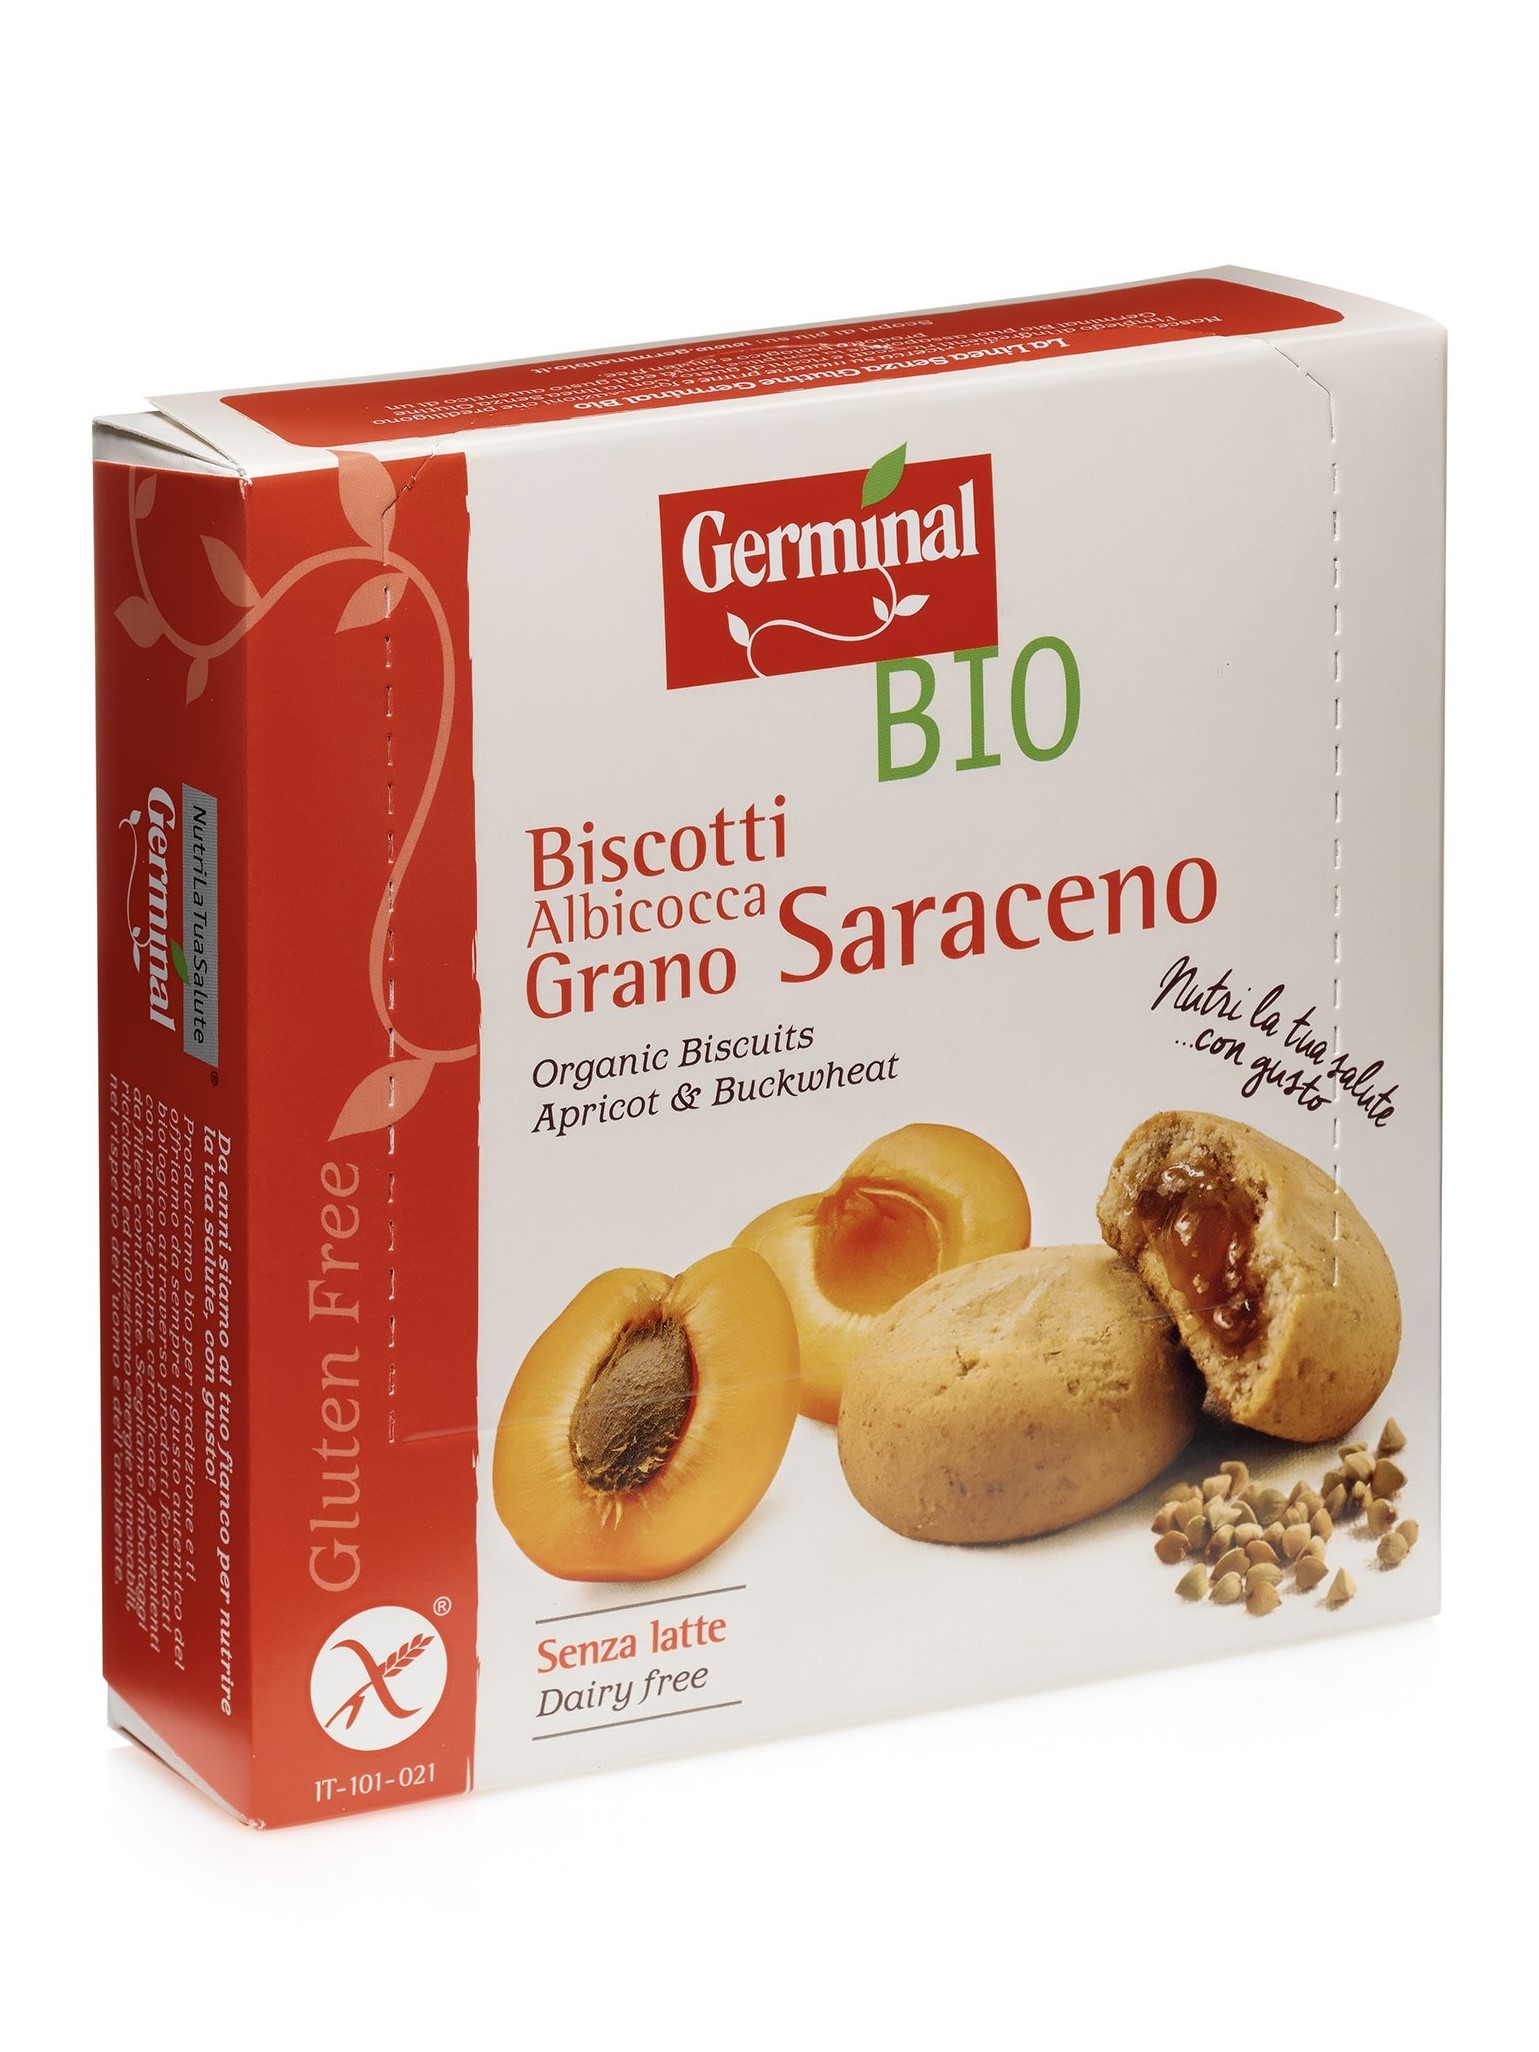 Immagine confezione Biscotti Albicocca Grano Saraceno Senza Glutine Germinal Bio